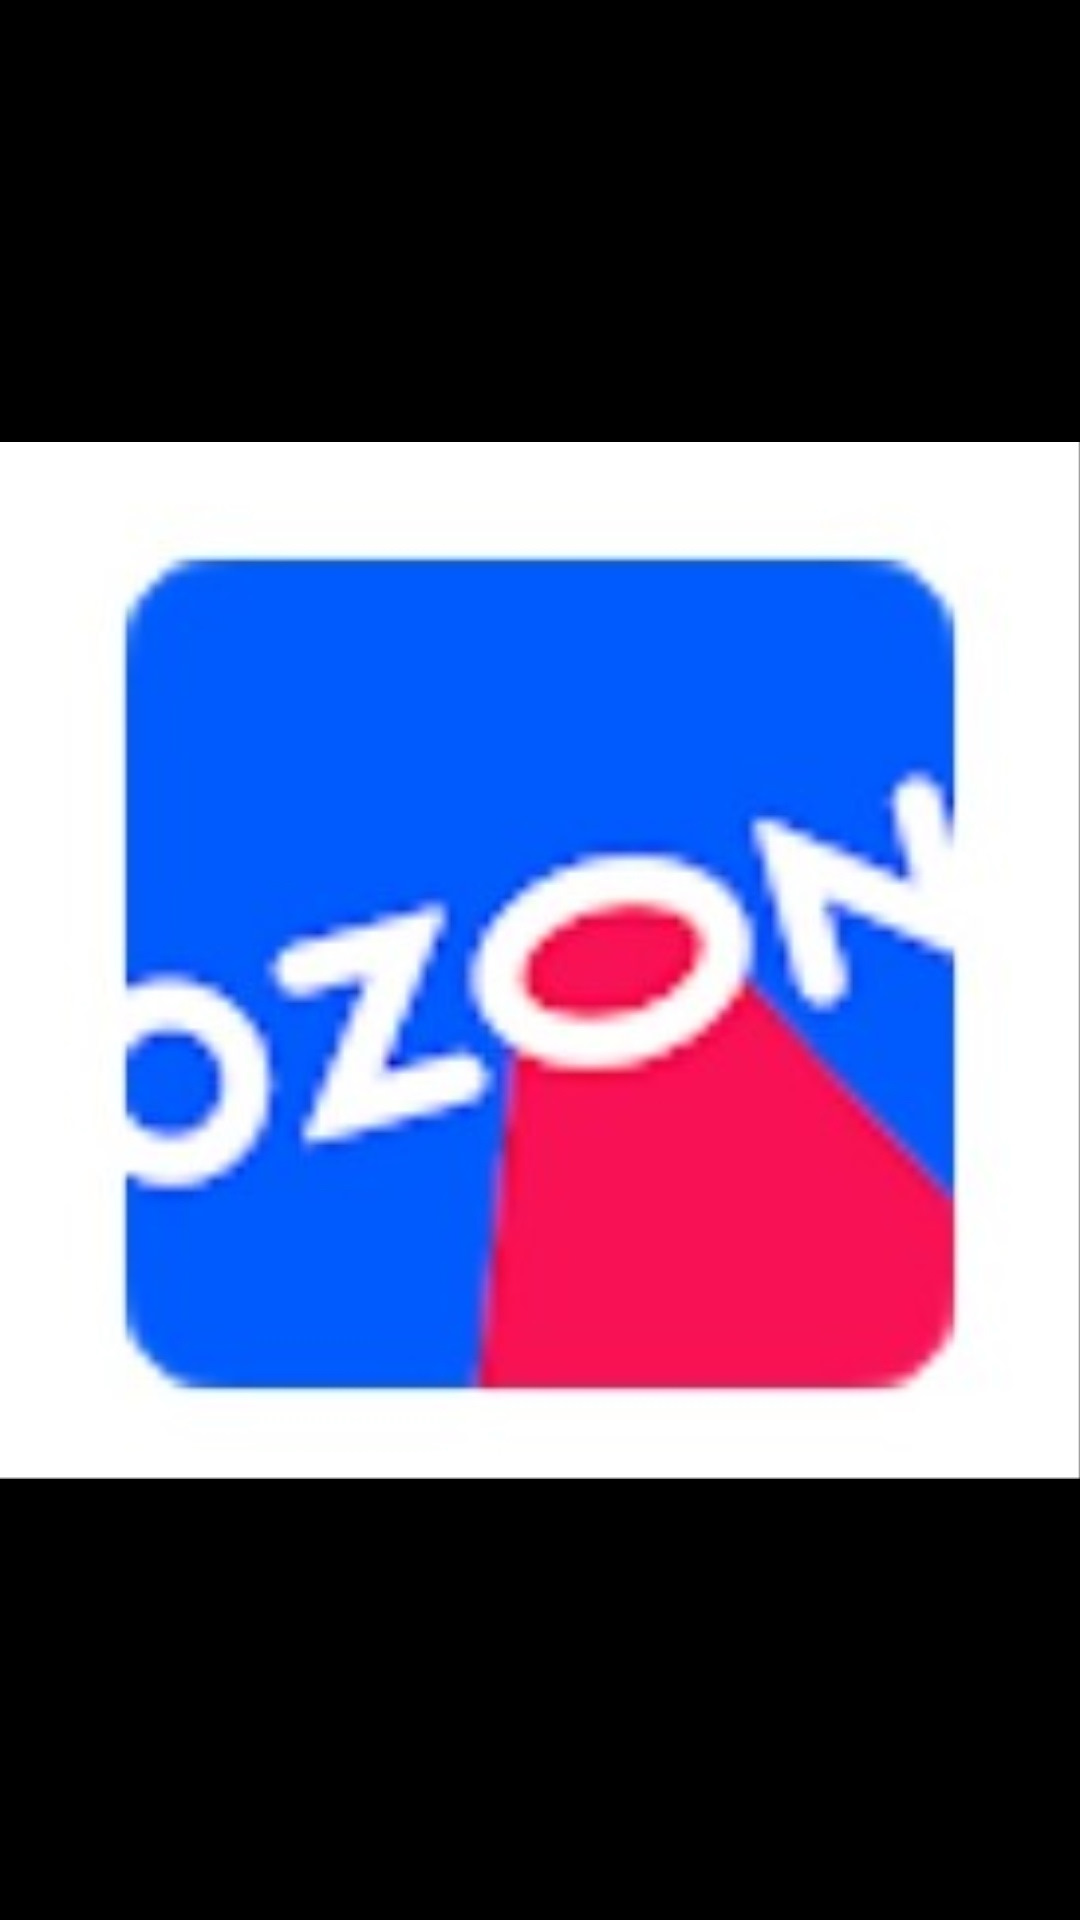 Озон реклама телефона. Озон. Озон логотип. Листовки Озон. OZON картинки.